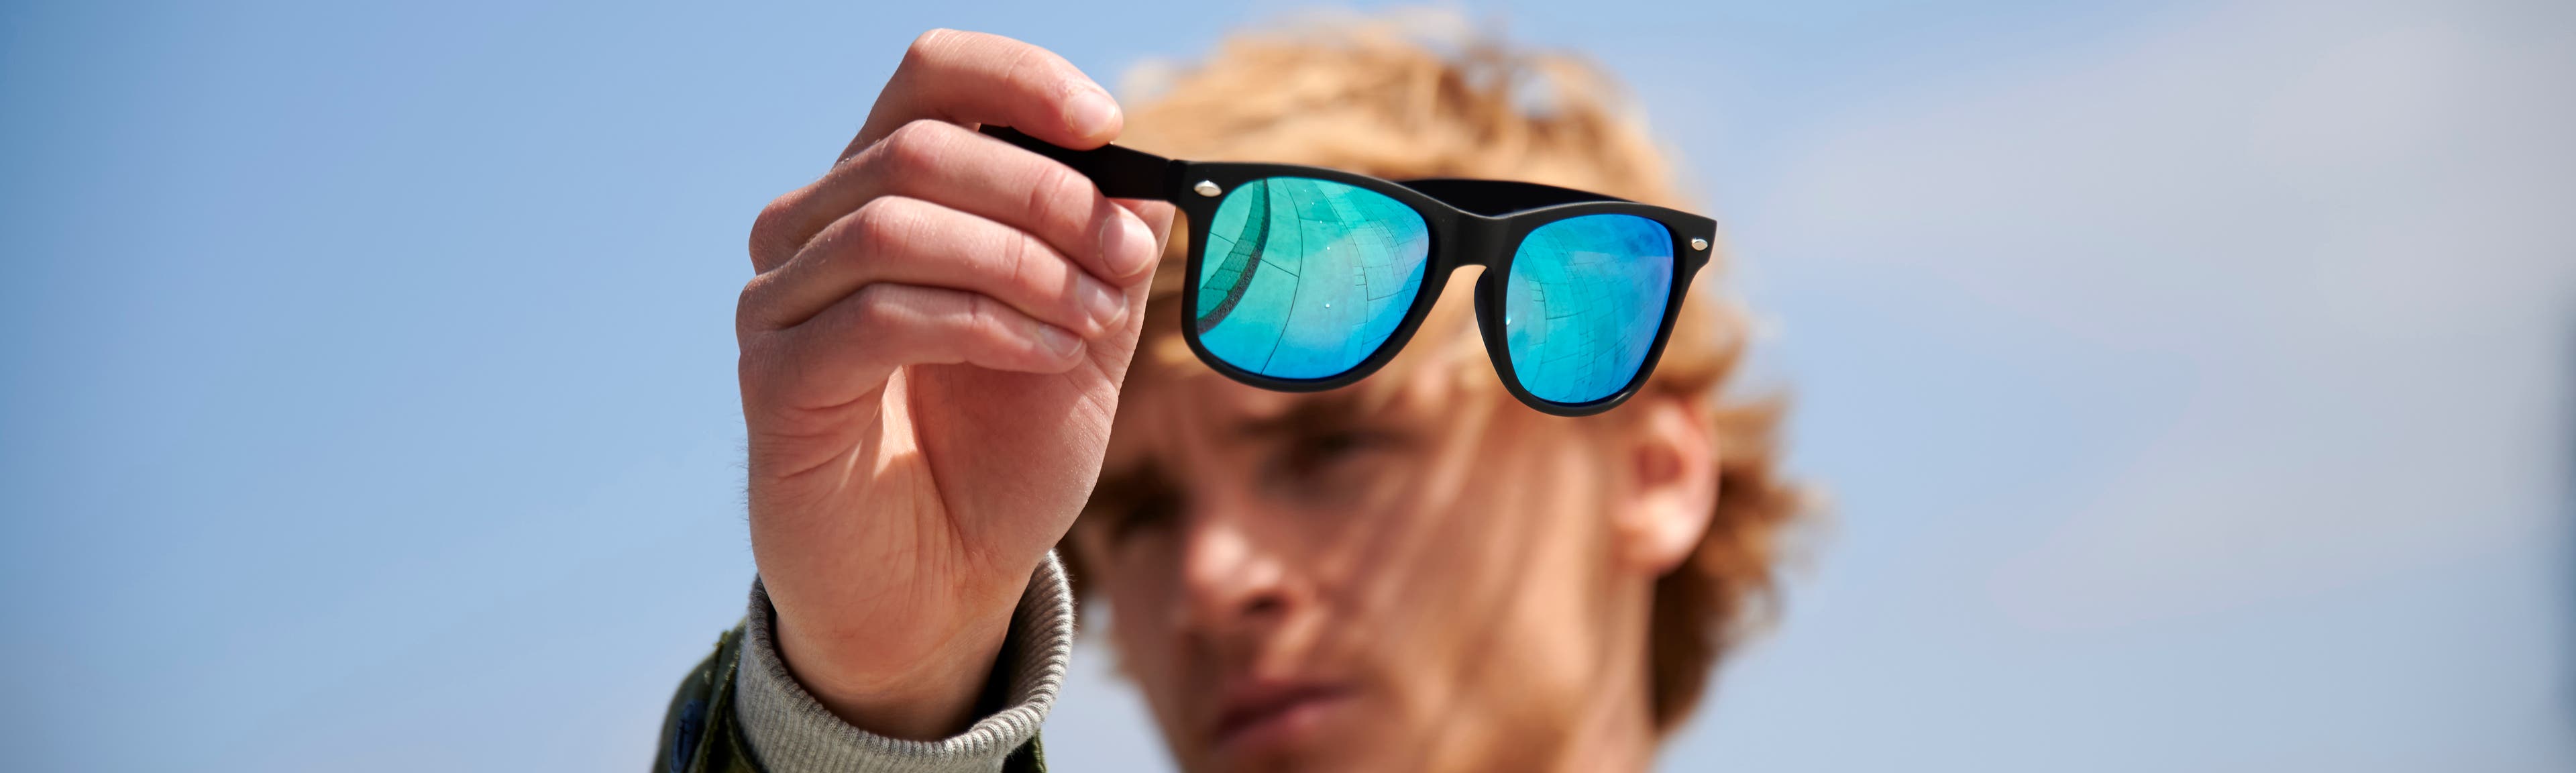 Óculos de sol - Proteja os seus olhos do sol